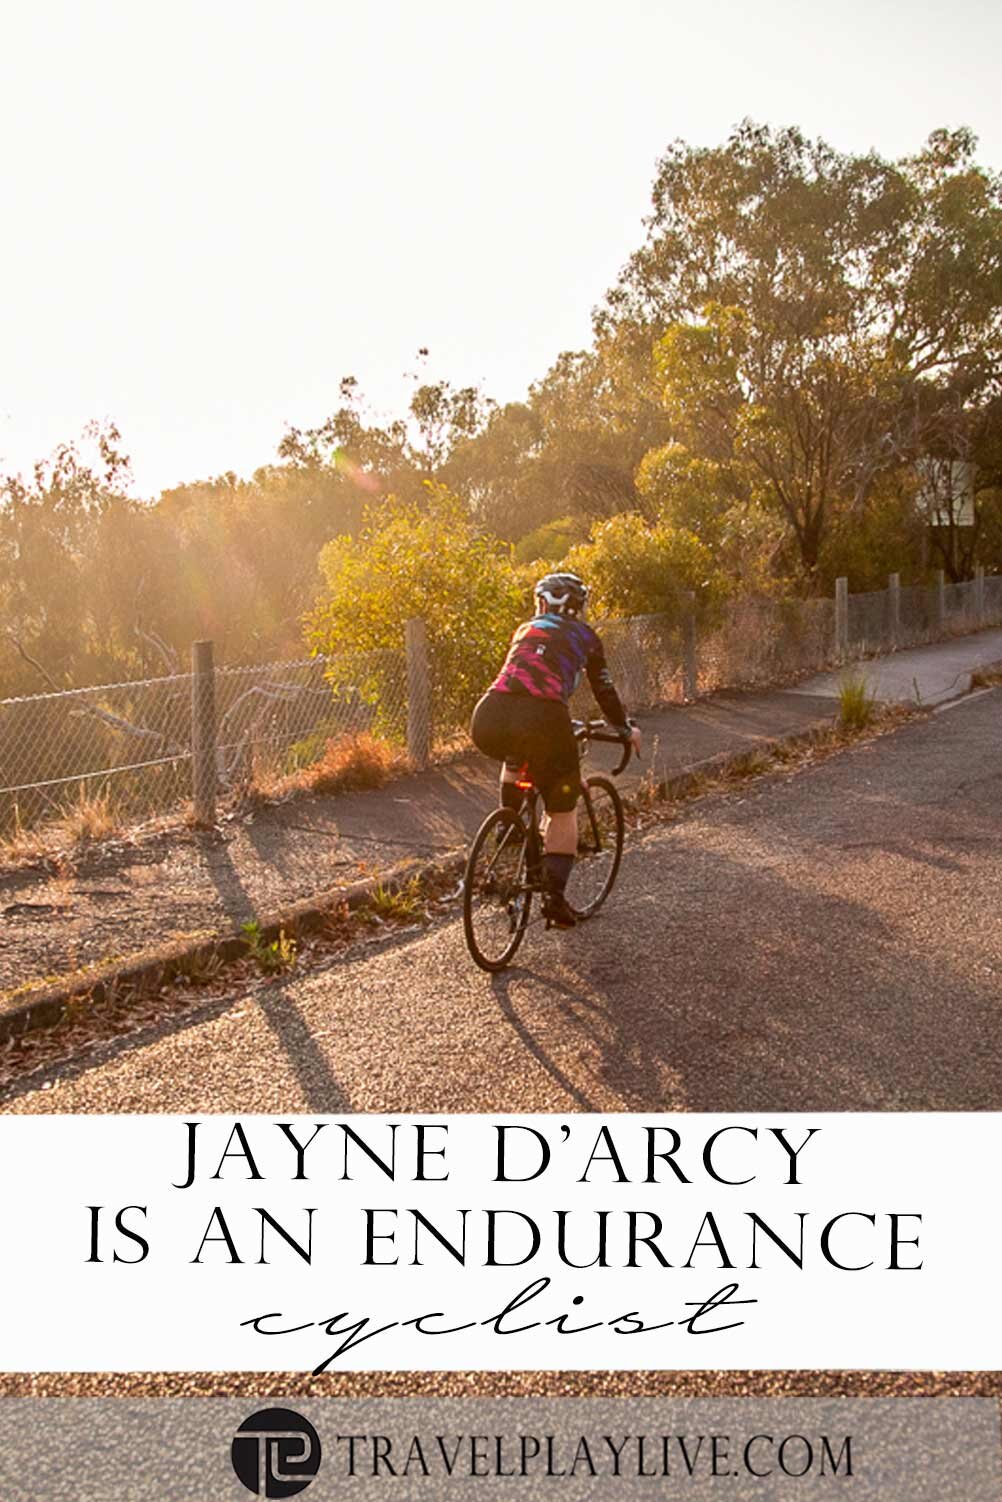 Jayne Darcy-cyclist3.jpg